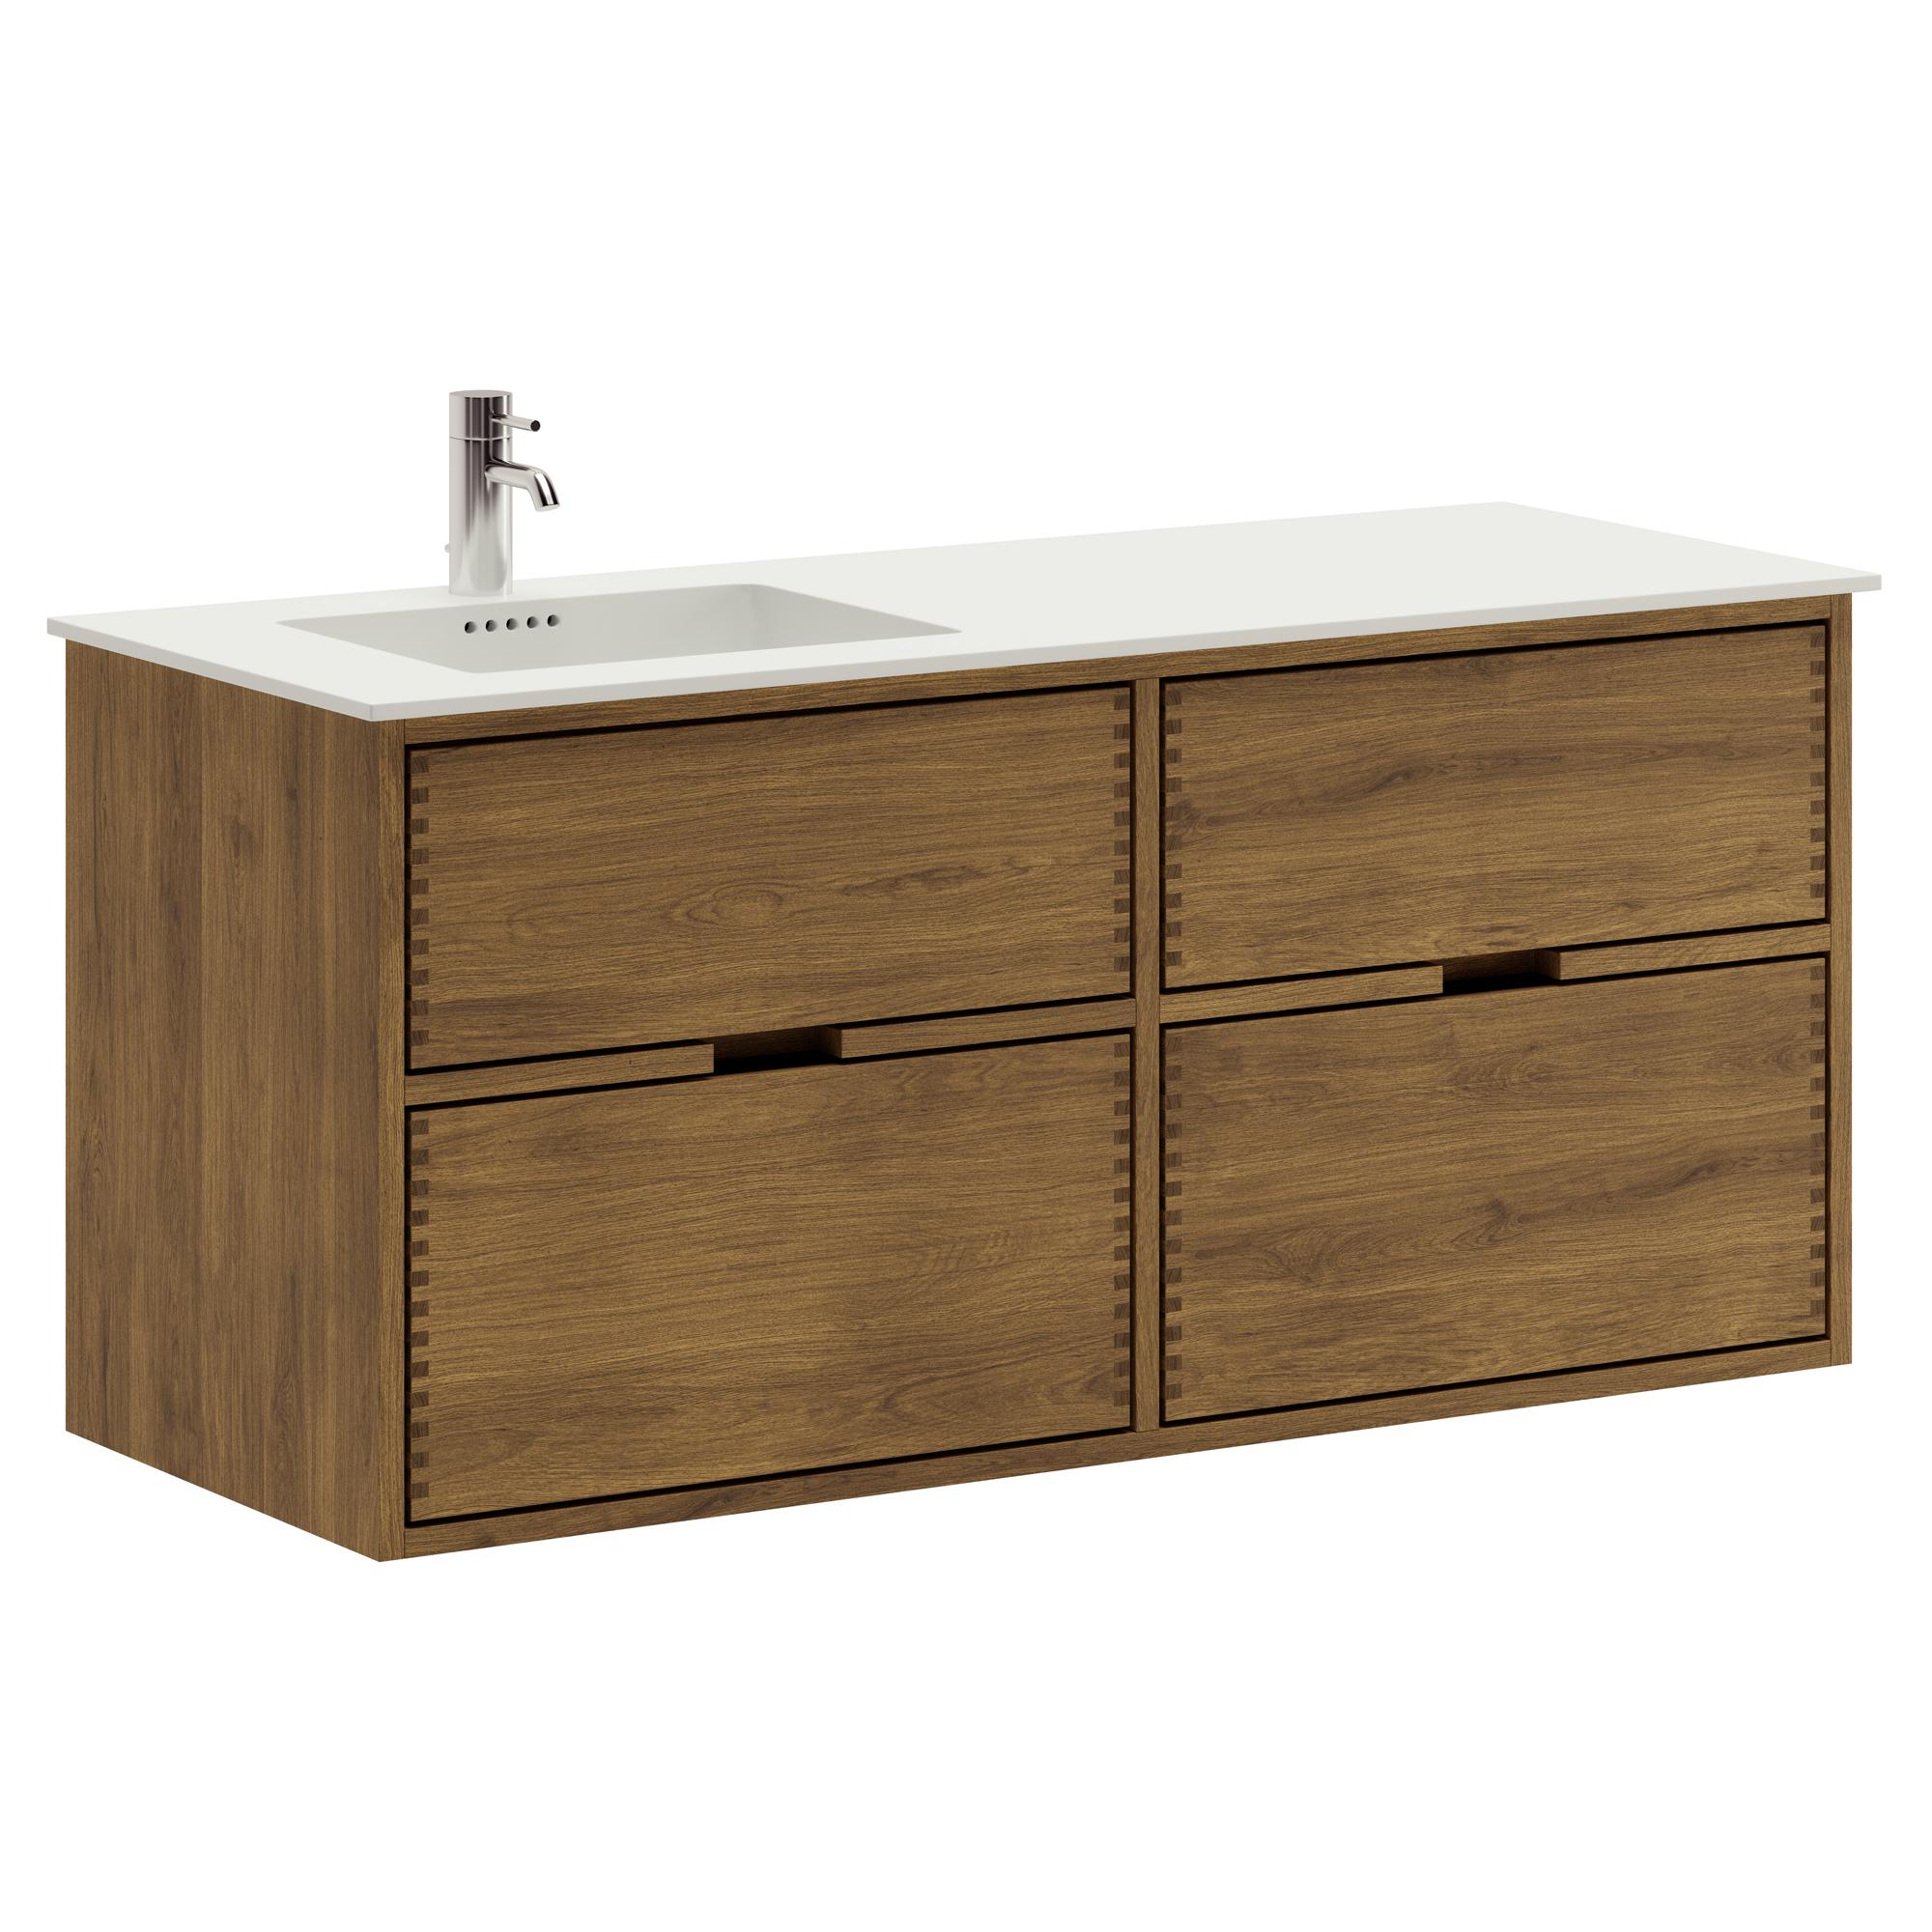 120 cm dunkel-geölter Just Wood Badezimmermöbel mit 4 Schubladen und Solid Surface-Waschbecken - Links